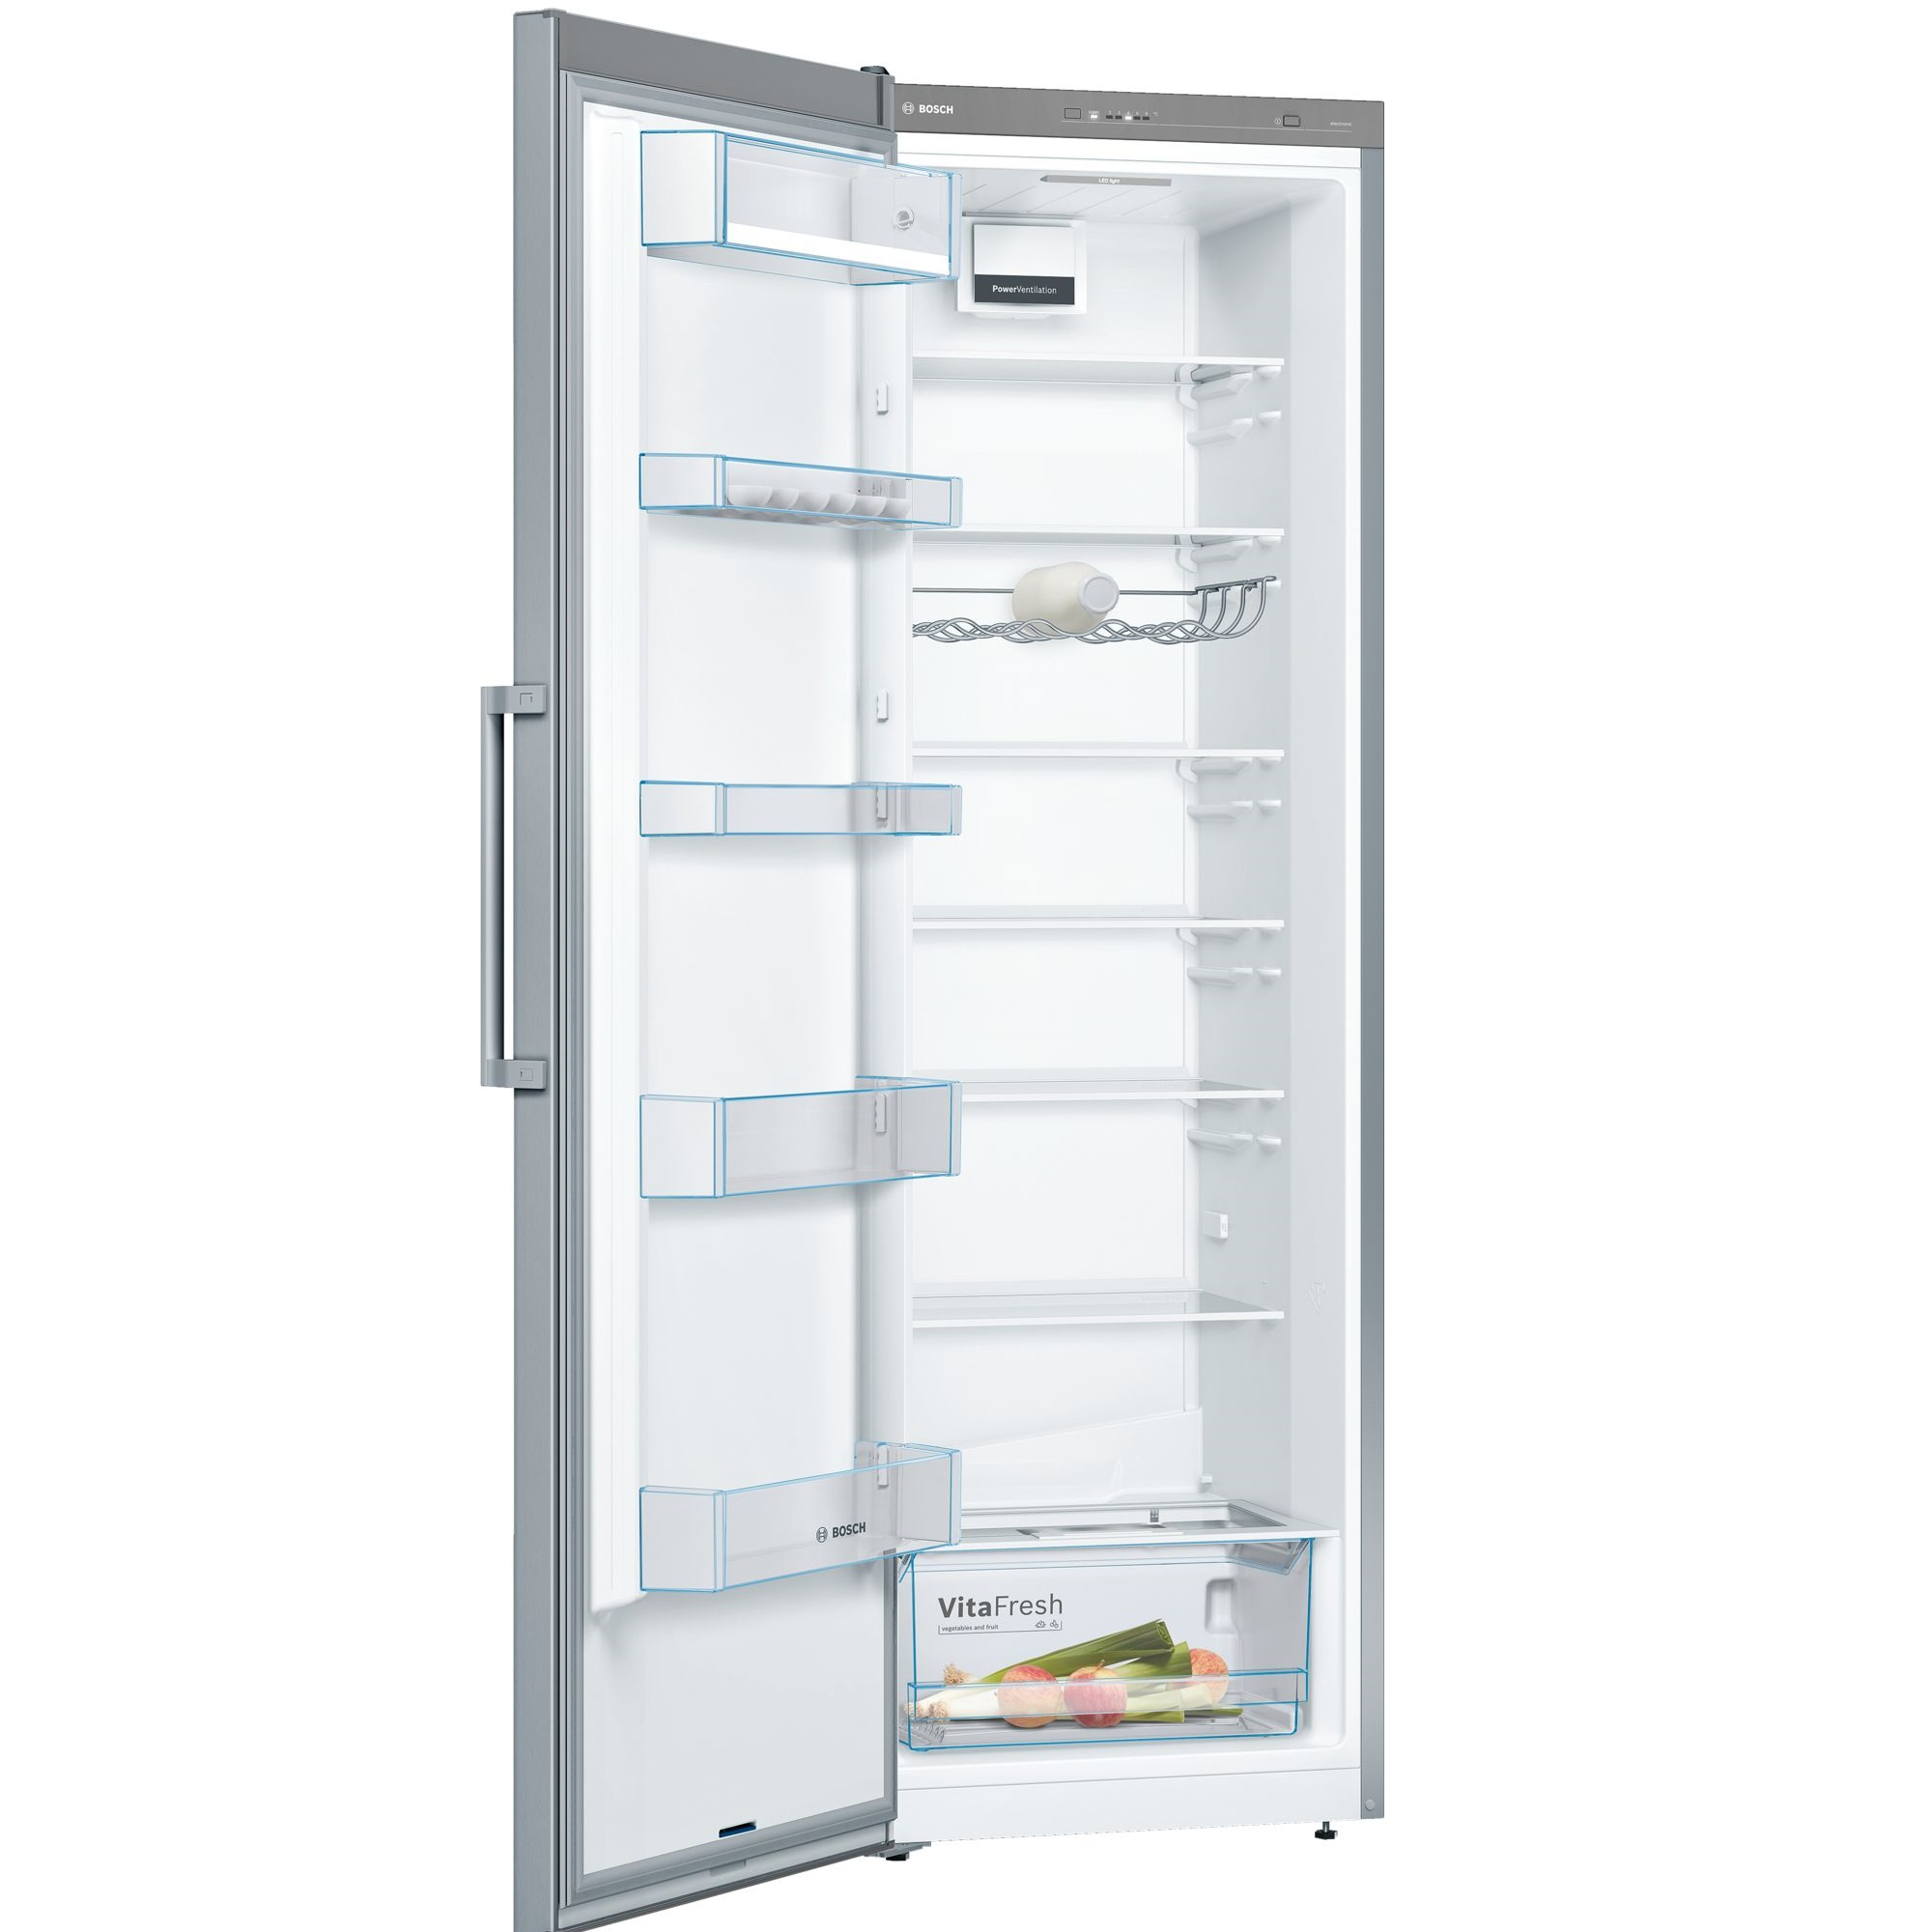 Tủ lạnh Bosch KSV36VI3P được thiết kế với nhiều ngăn cho nhiều mục đích sử dụng khác nhau